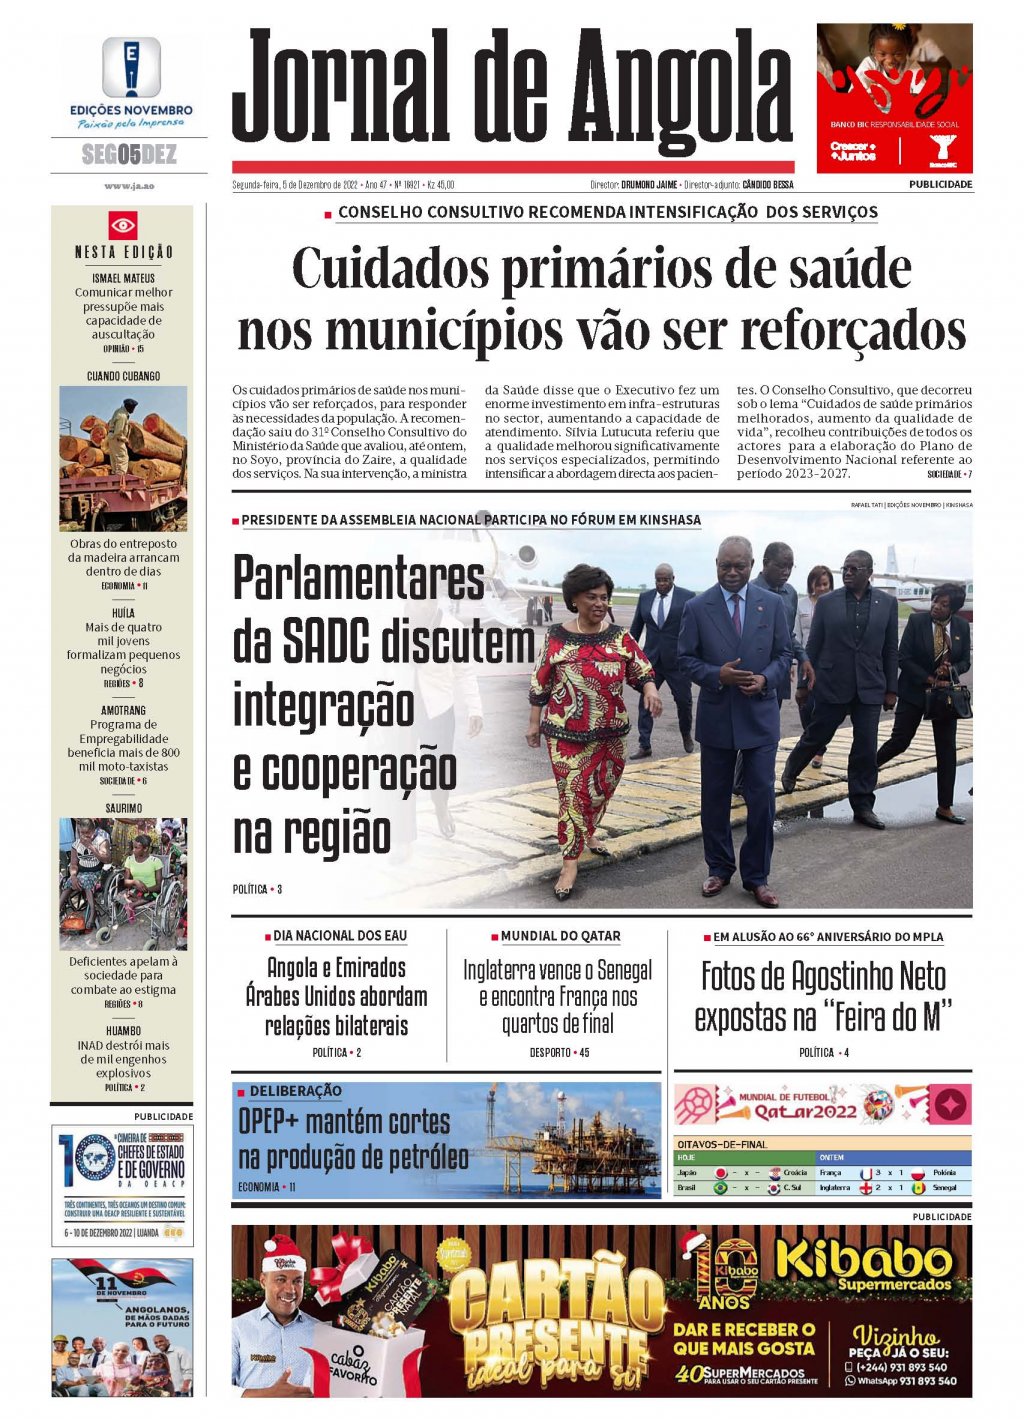 Jornal de Angola - Notícias - Xadrez: Equipas confirmam presenças